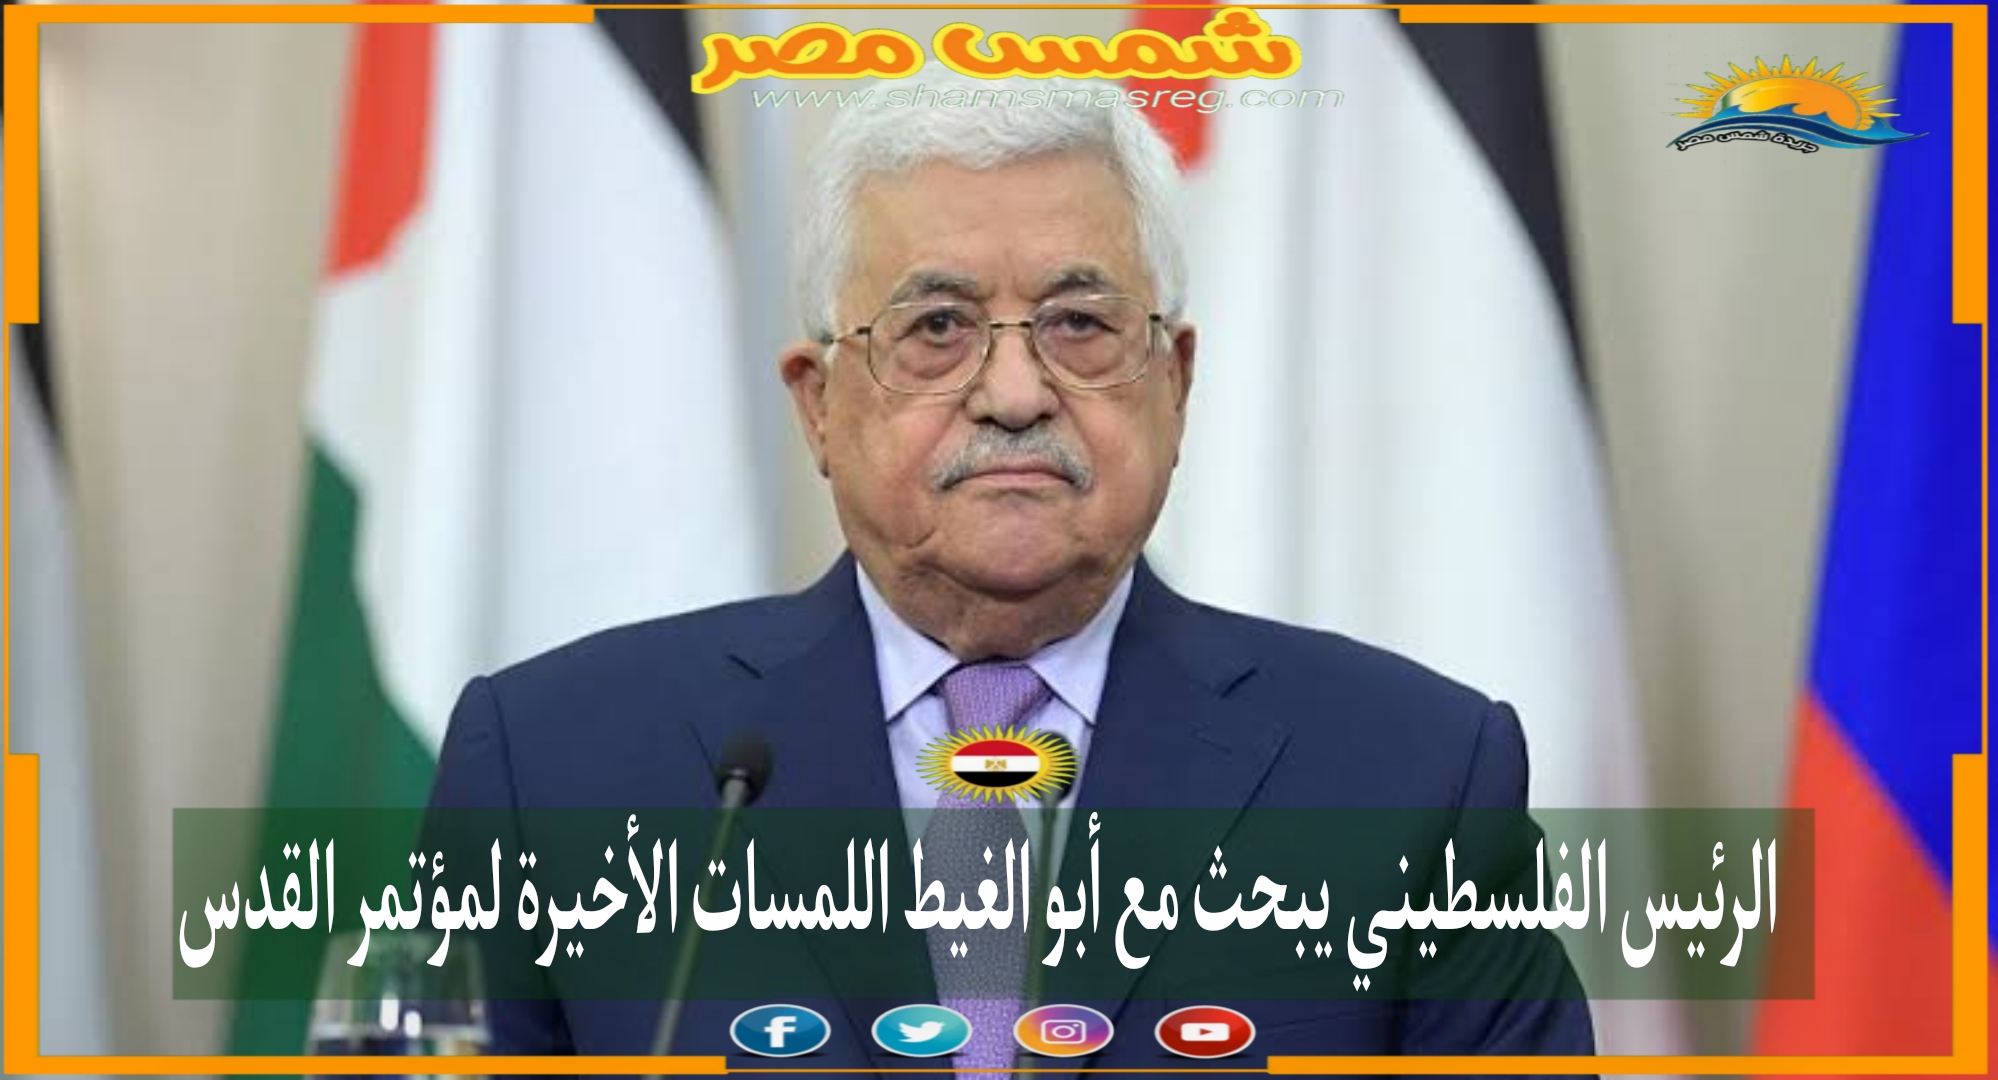 الرئيس الفلسطيني يبحث مع أبو الغيط اللمسات الأخيرة لمؤتمر القدس